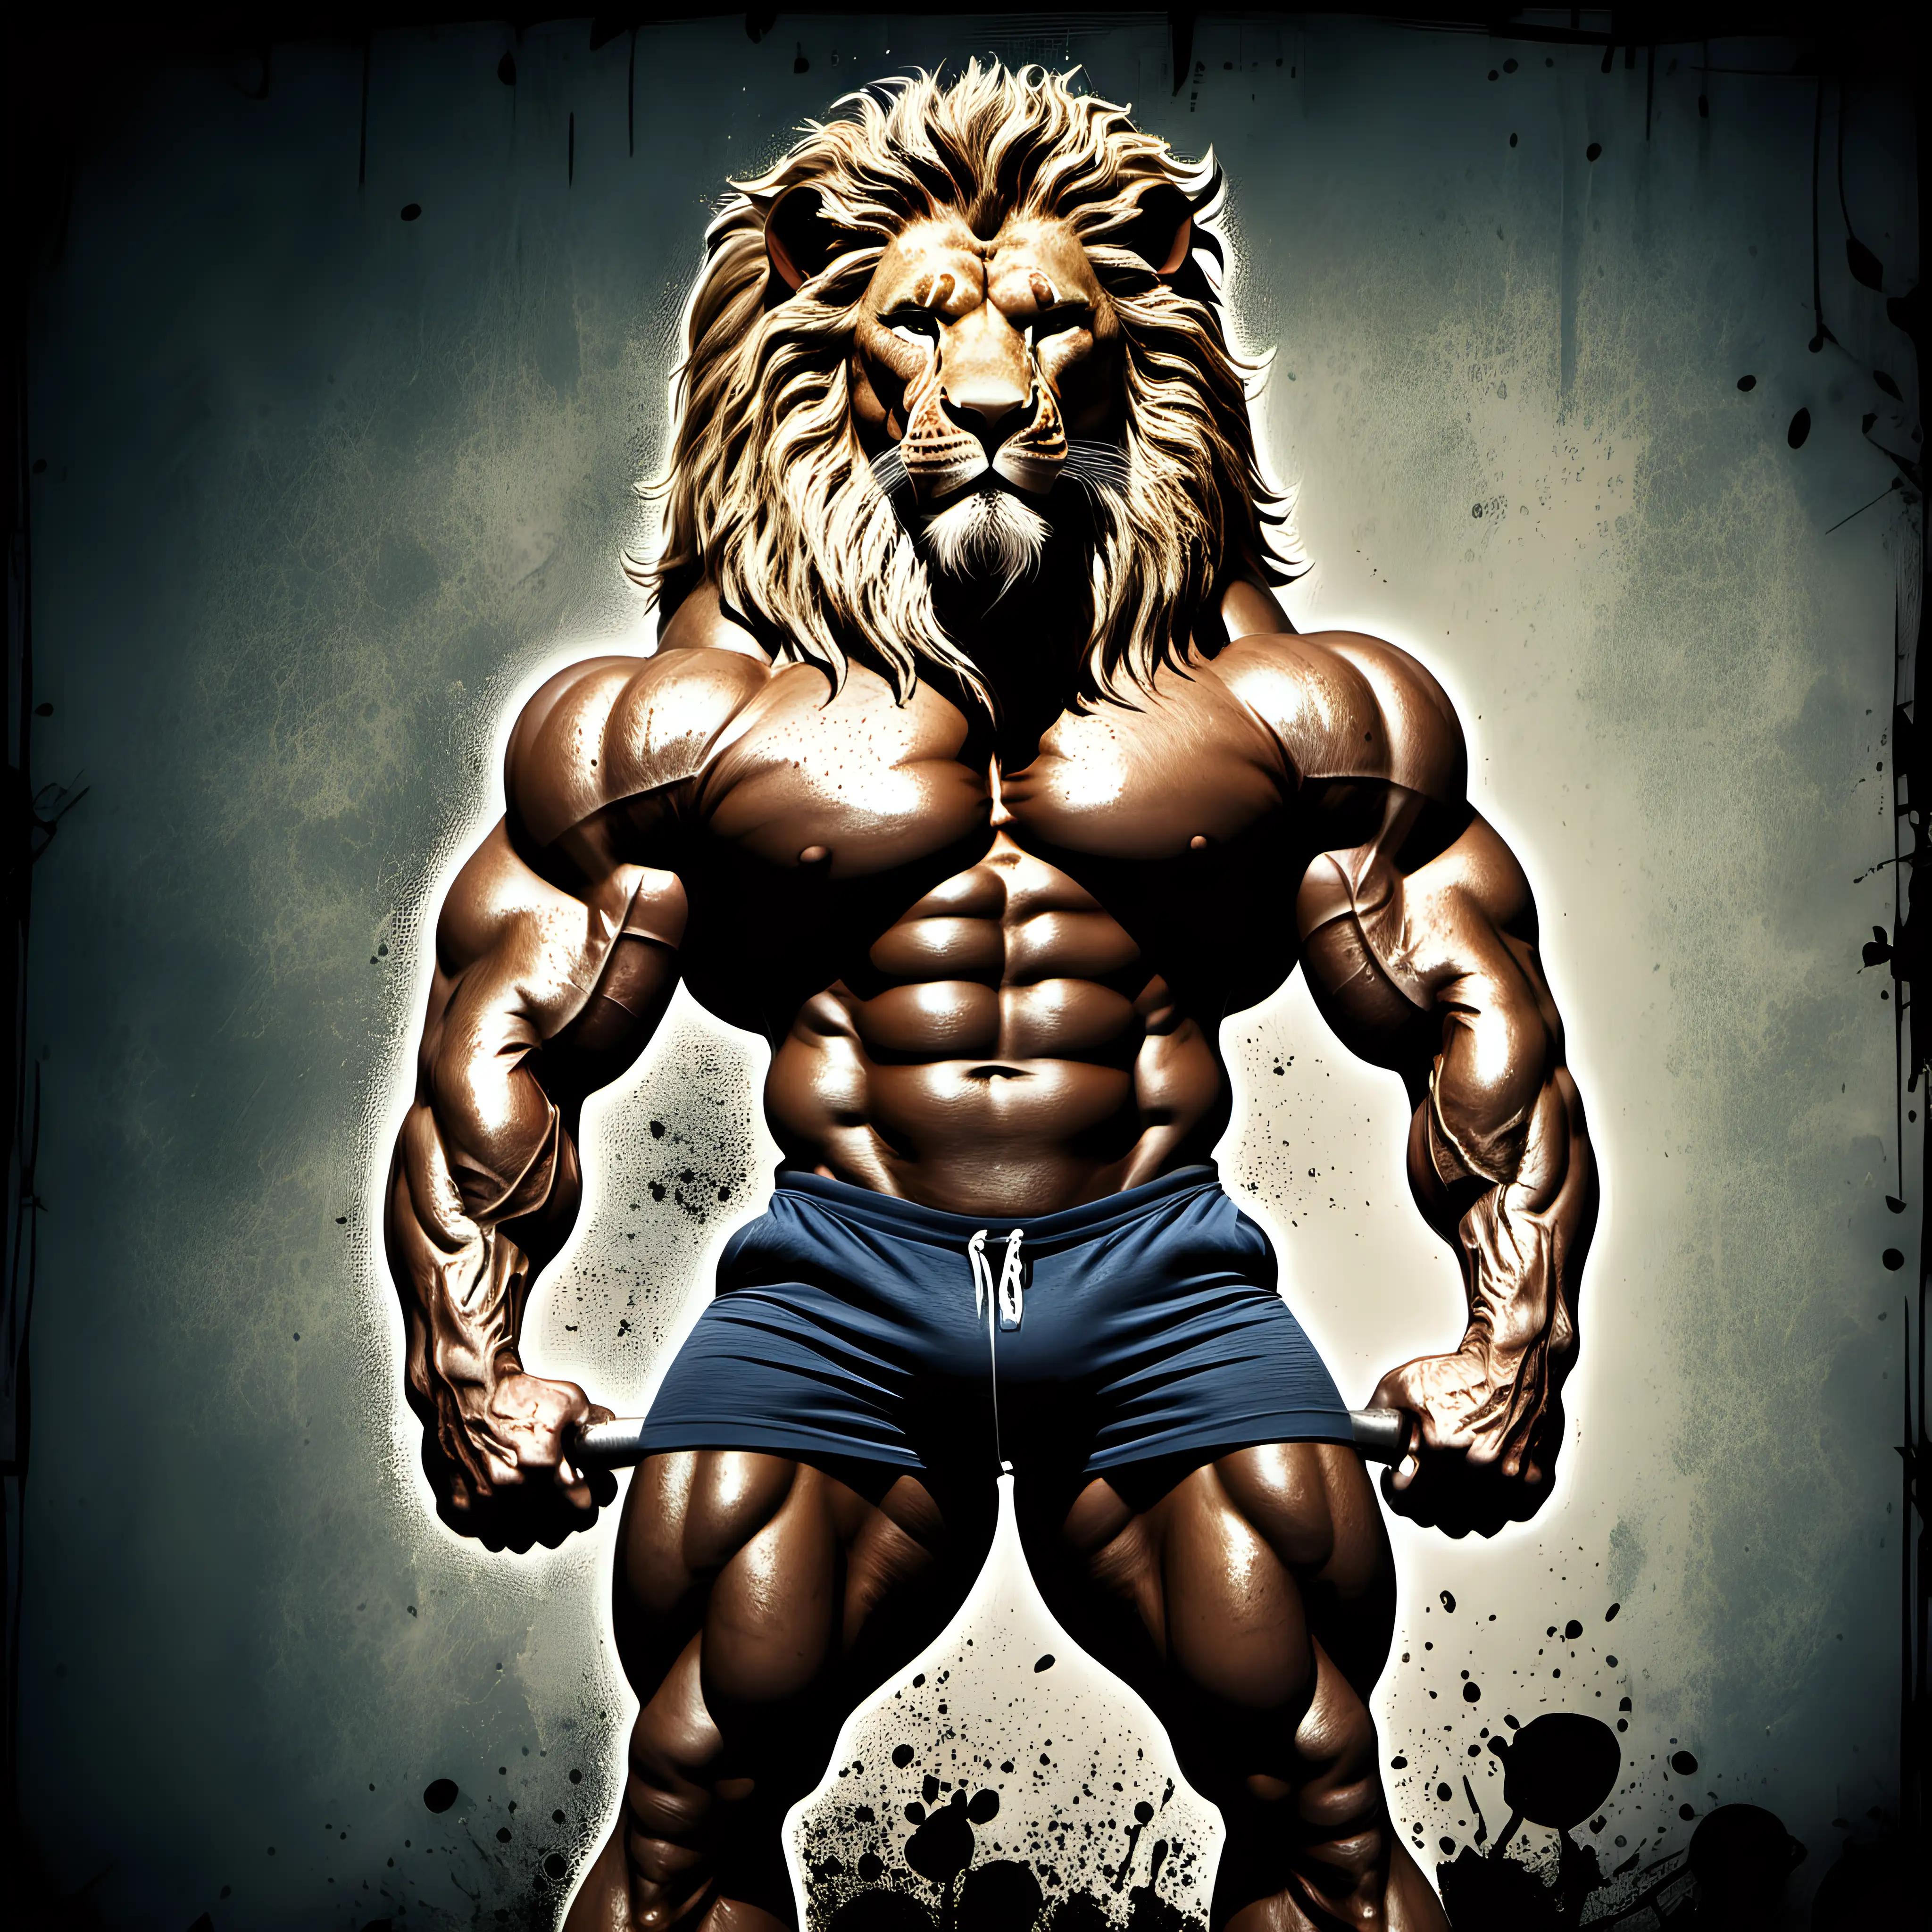 Powerful Grunge Bodybuilder Lion in Action